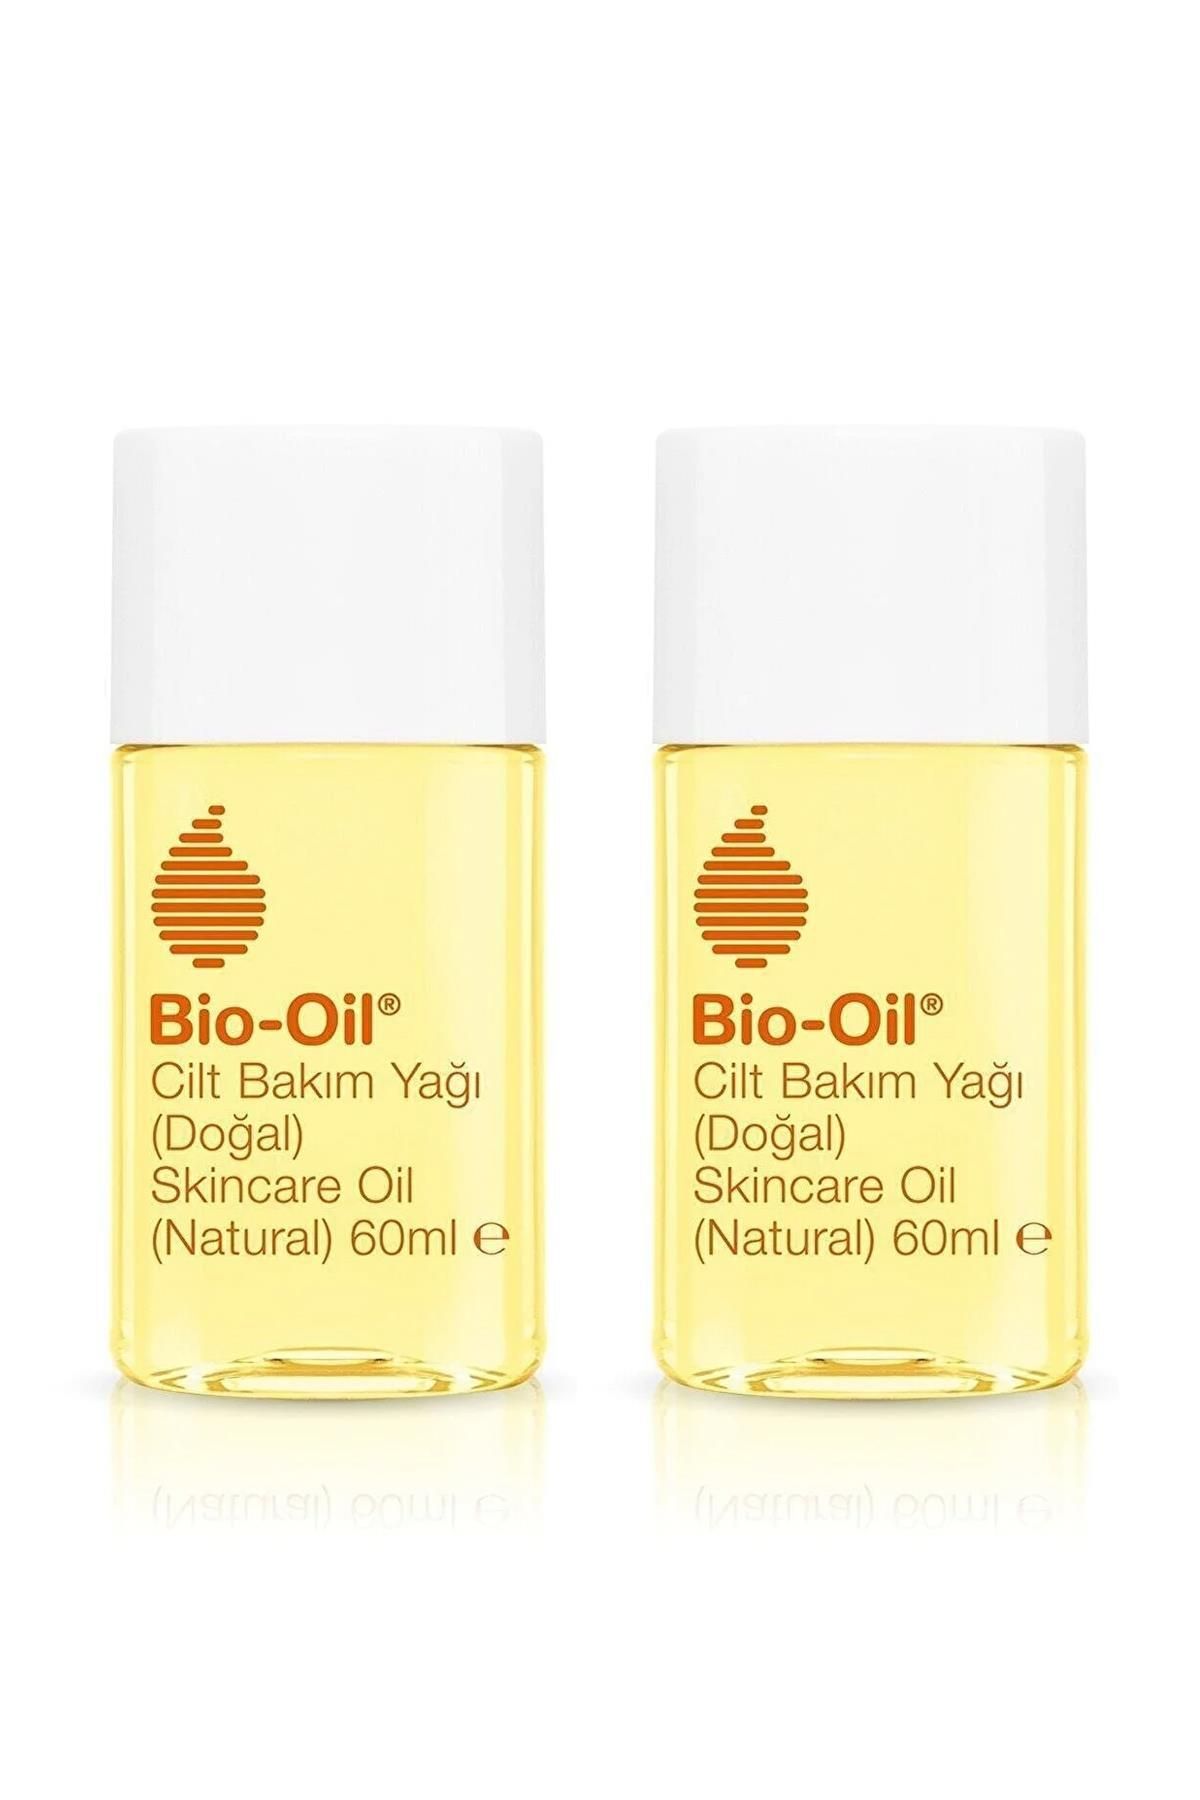 Bio-Oil Natural Cilt Bakım Yağı 60ml * 2 Adet